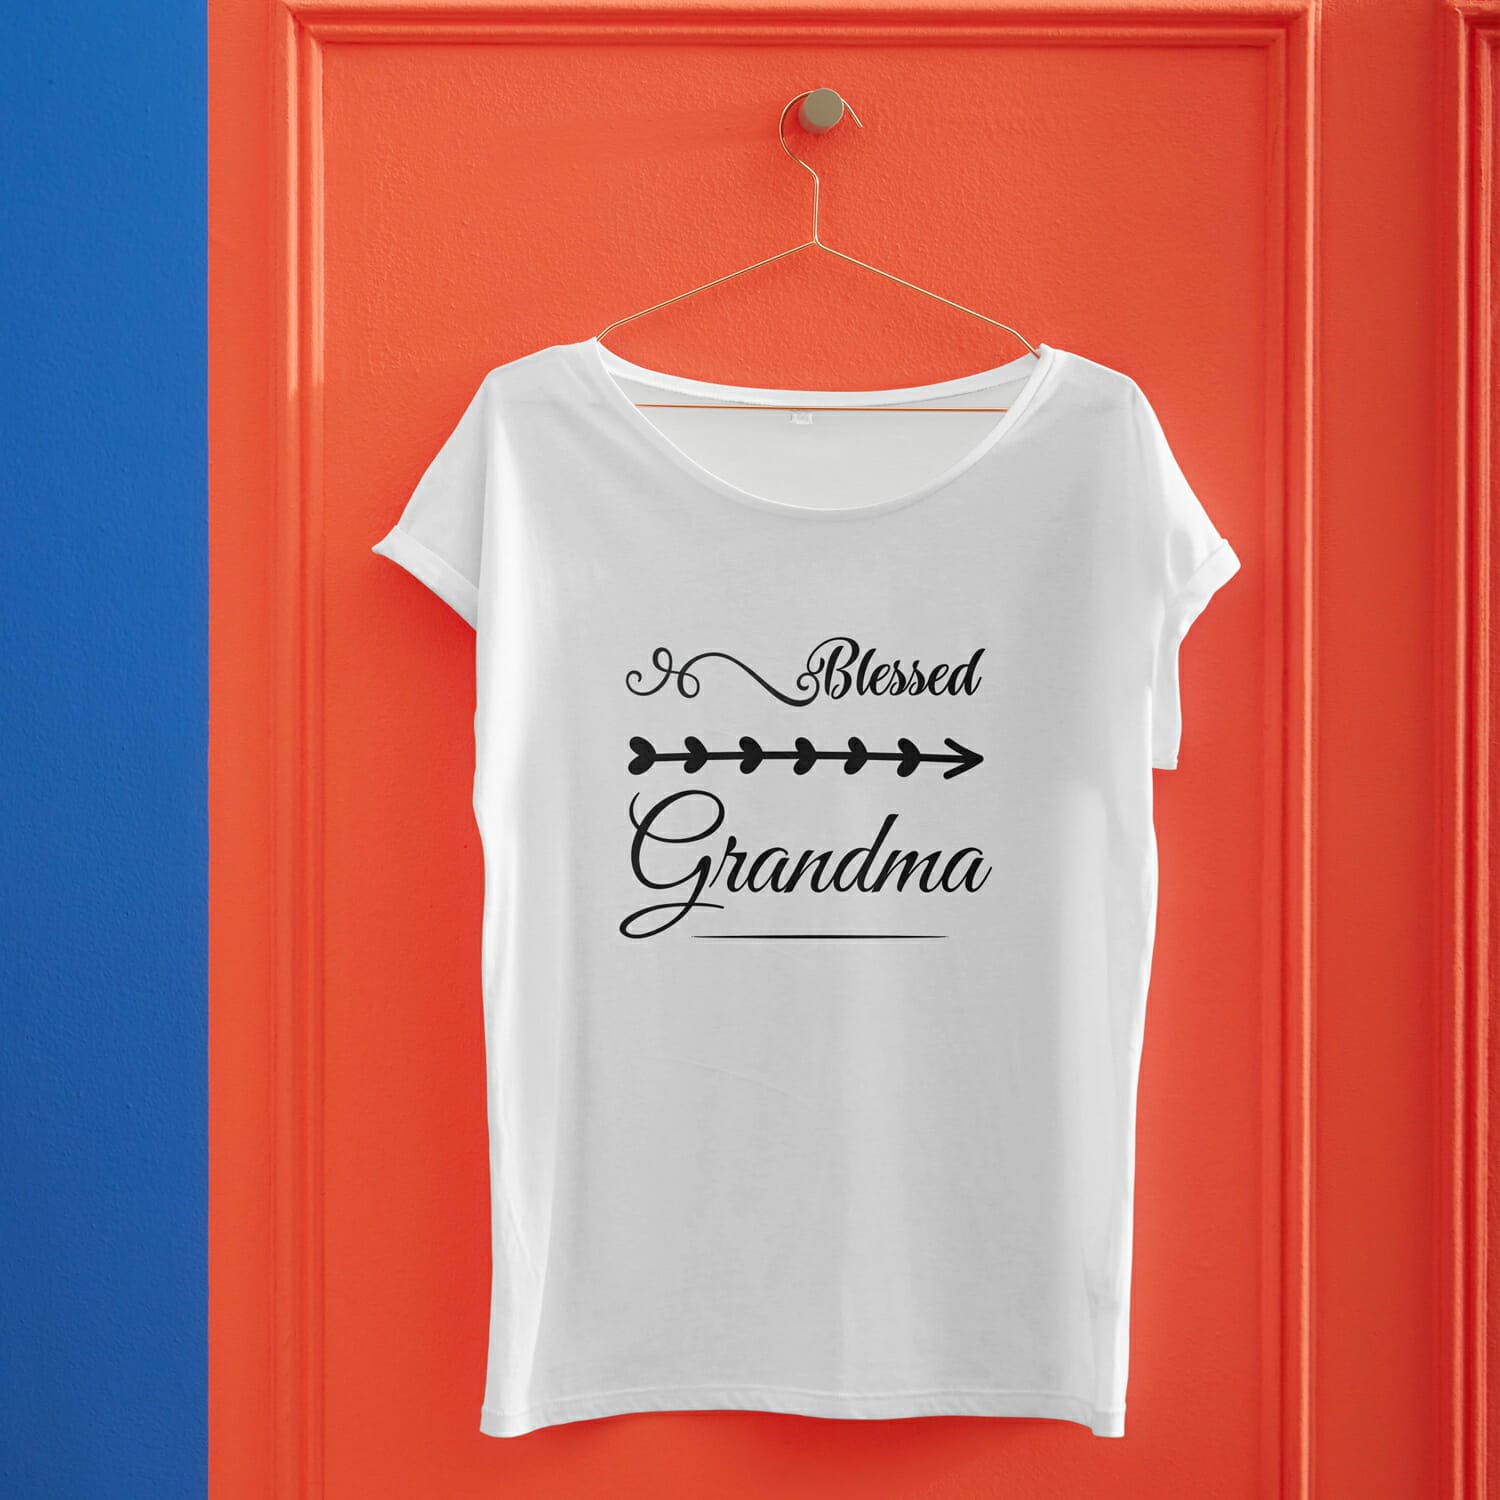 Blessed Grandma Tshirt Design